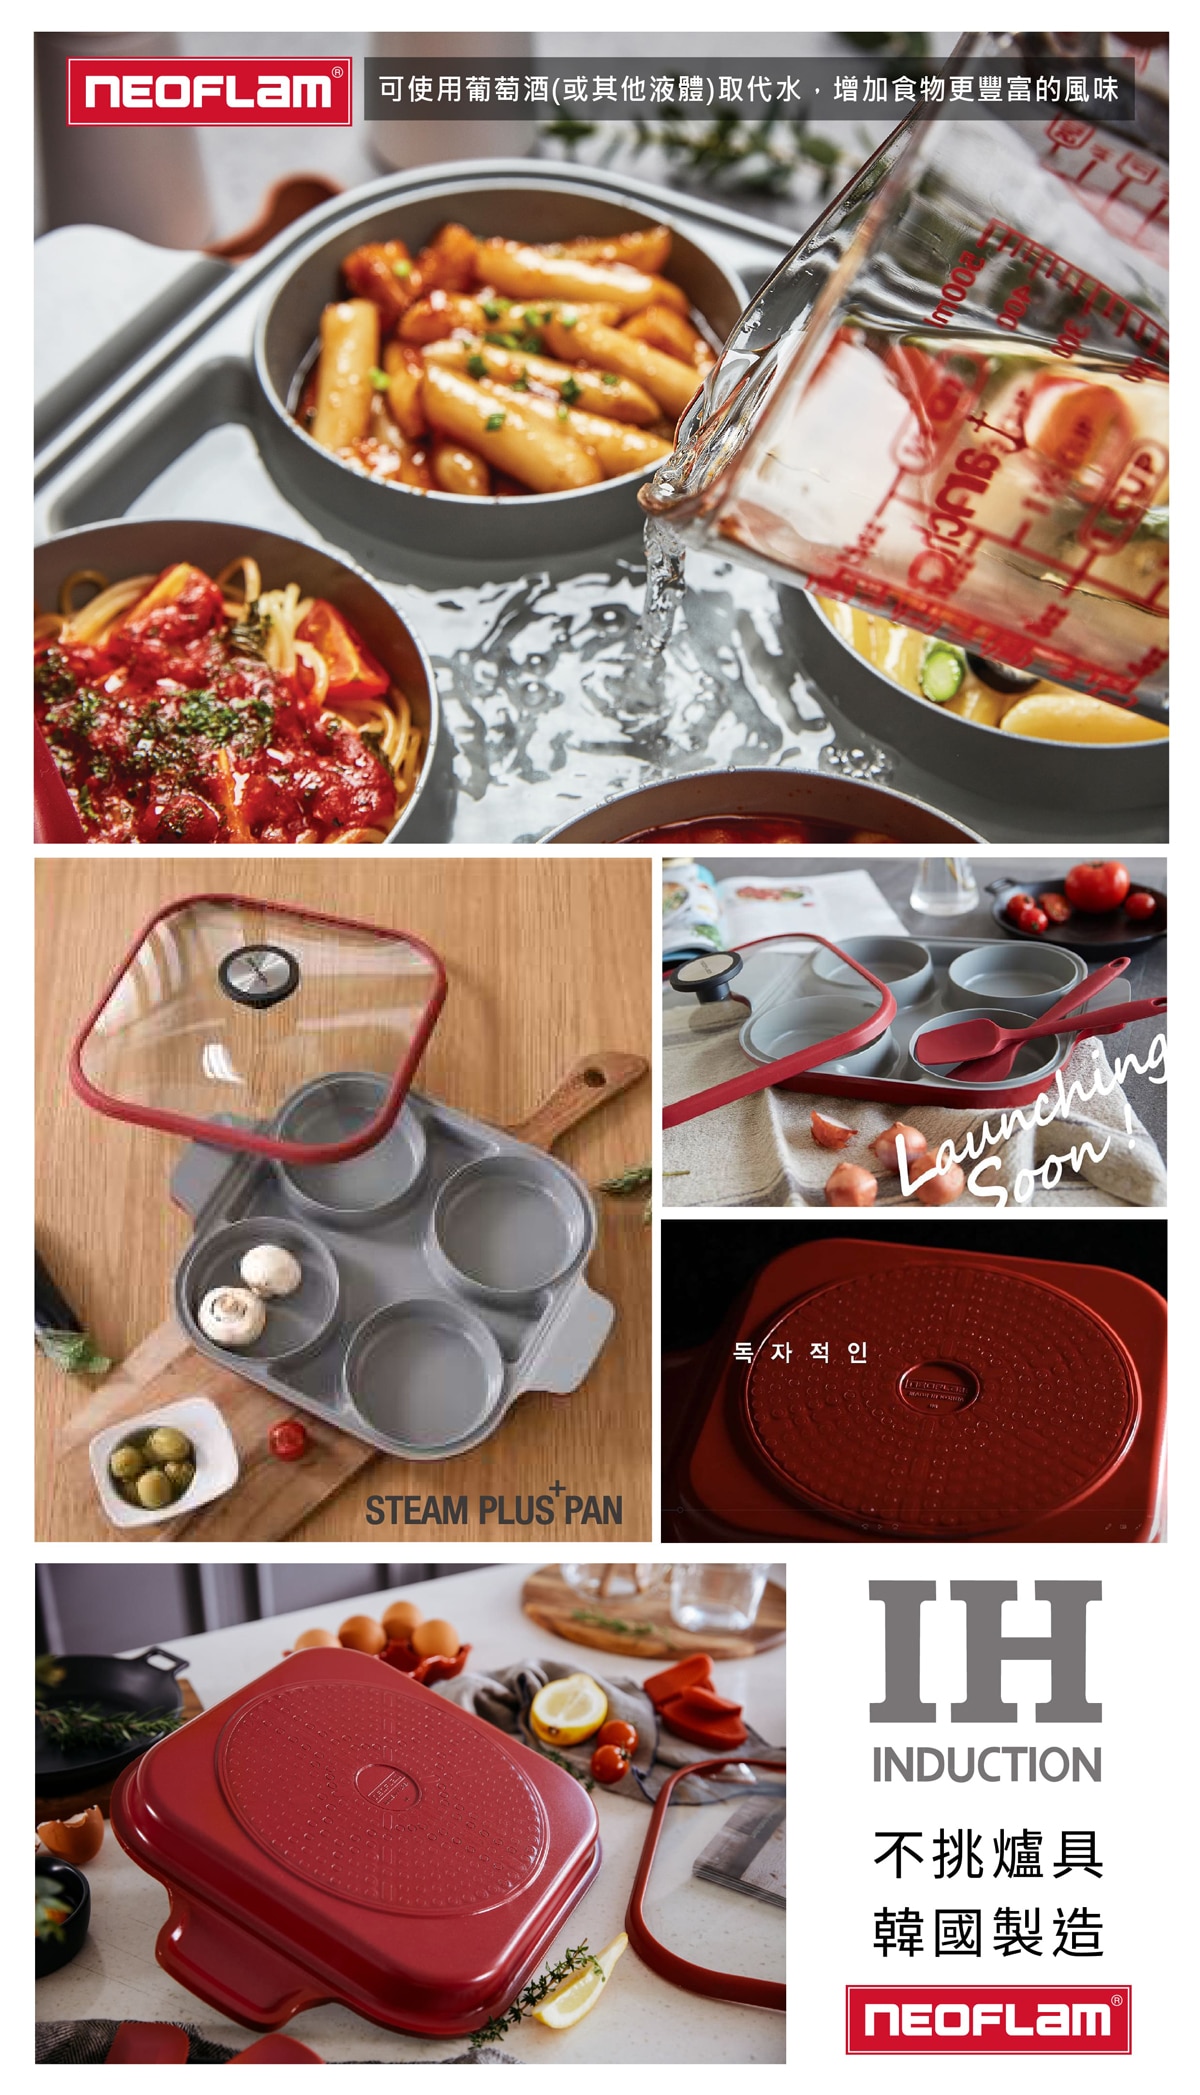 NEOFLAM 雙耳烹飪神器含蓋 28公分韓國製造，四格烹飪槽設計與時尚外型，可以不挑鍋具輕鬆使用。